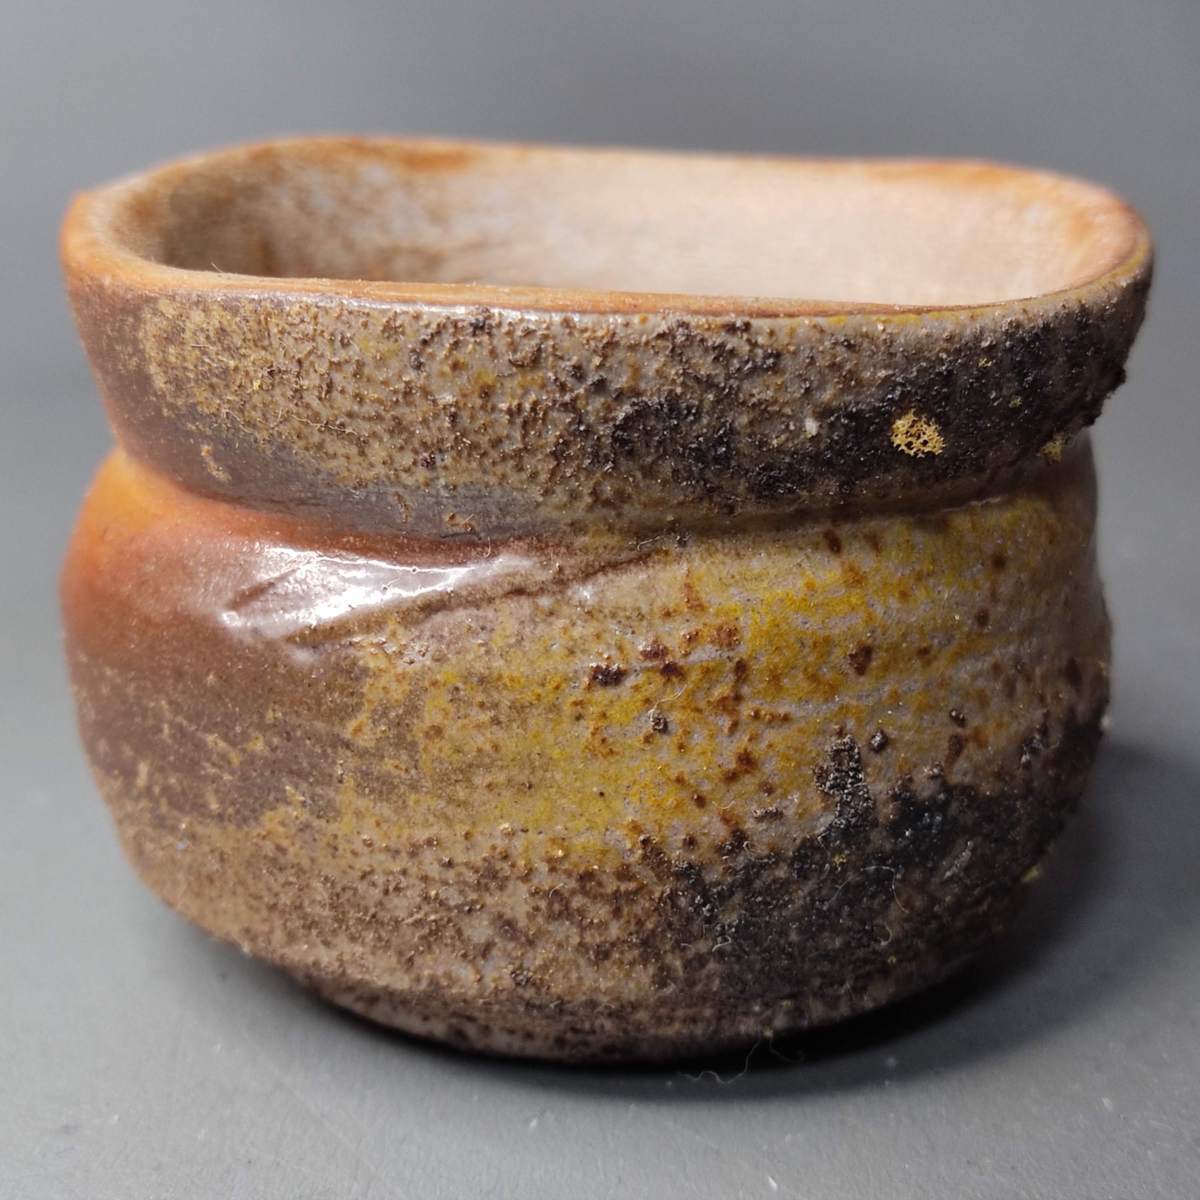 Traditional Japanese Bizen ware, made by Tsuneyoshi Suzuki, sake cup